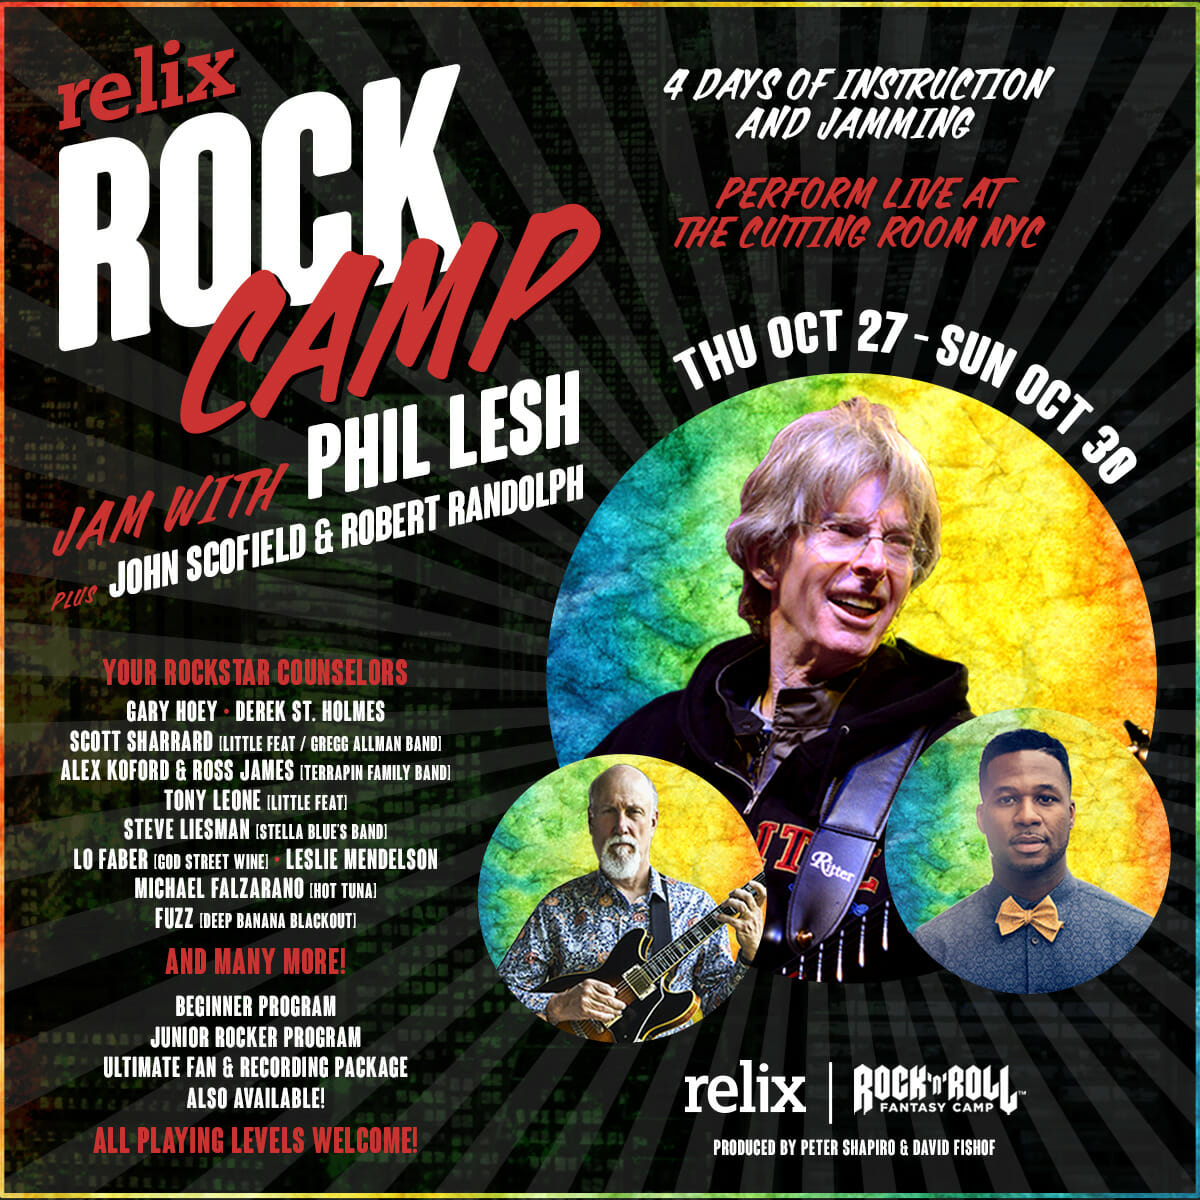 Relix Rock Camp